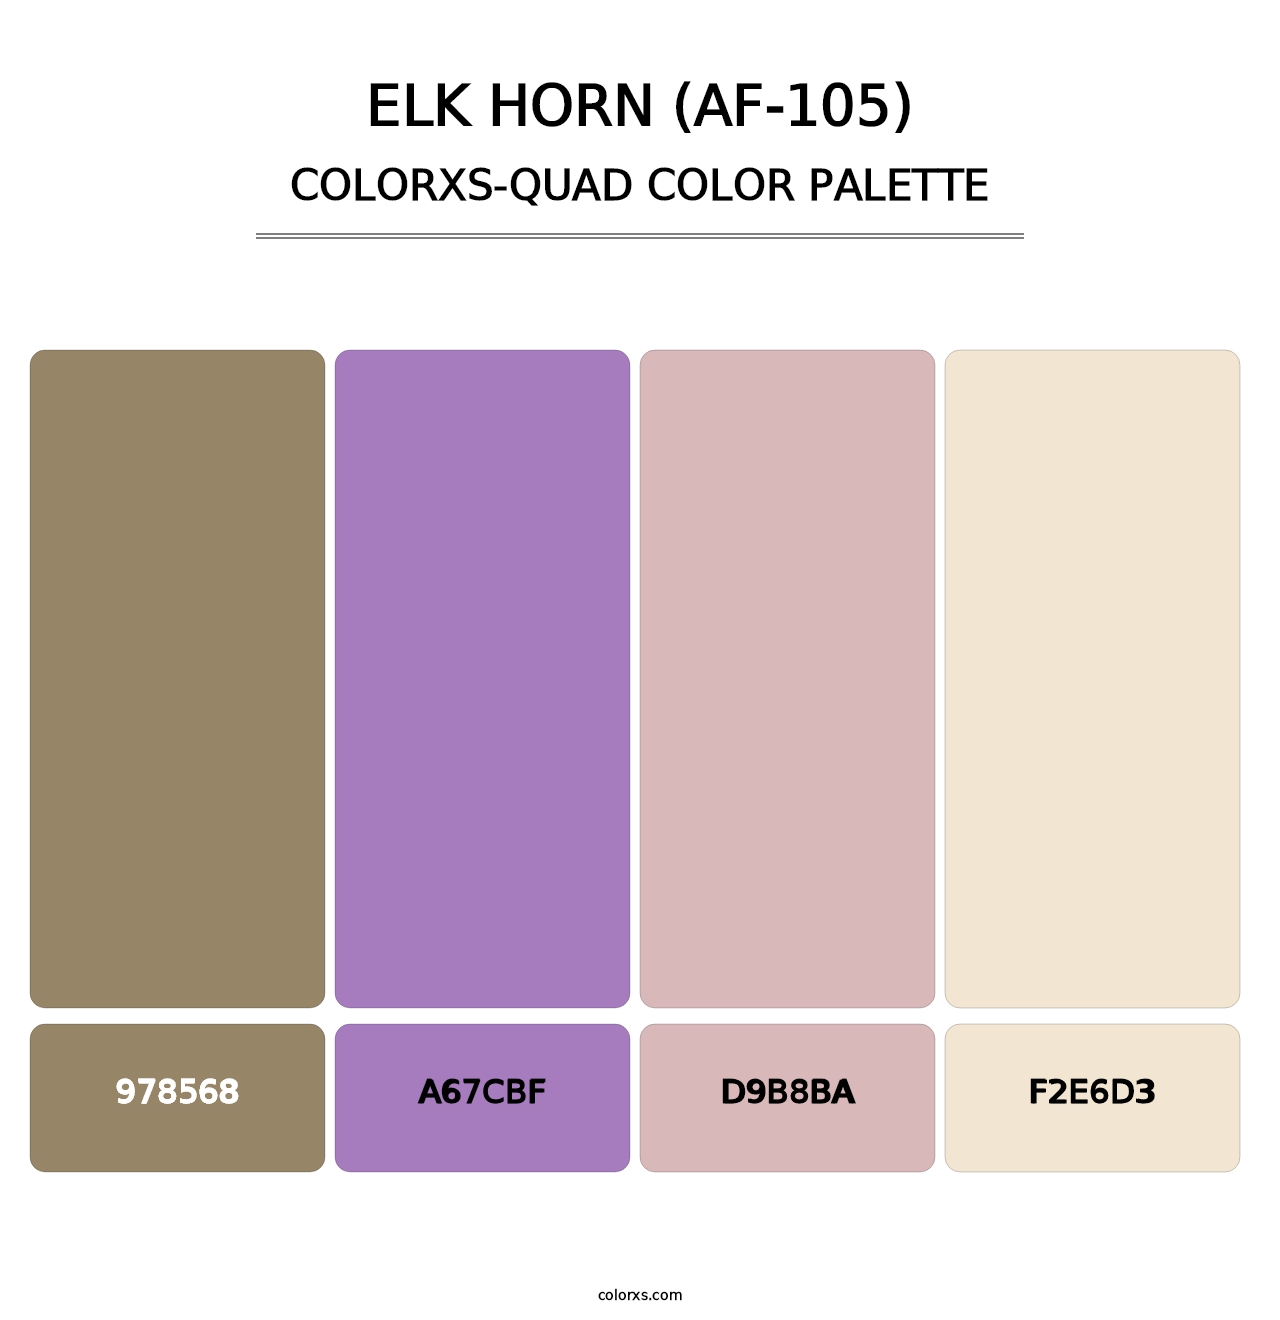 Elk Horn (AF-105) - Colorxs Quad Palette